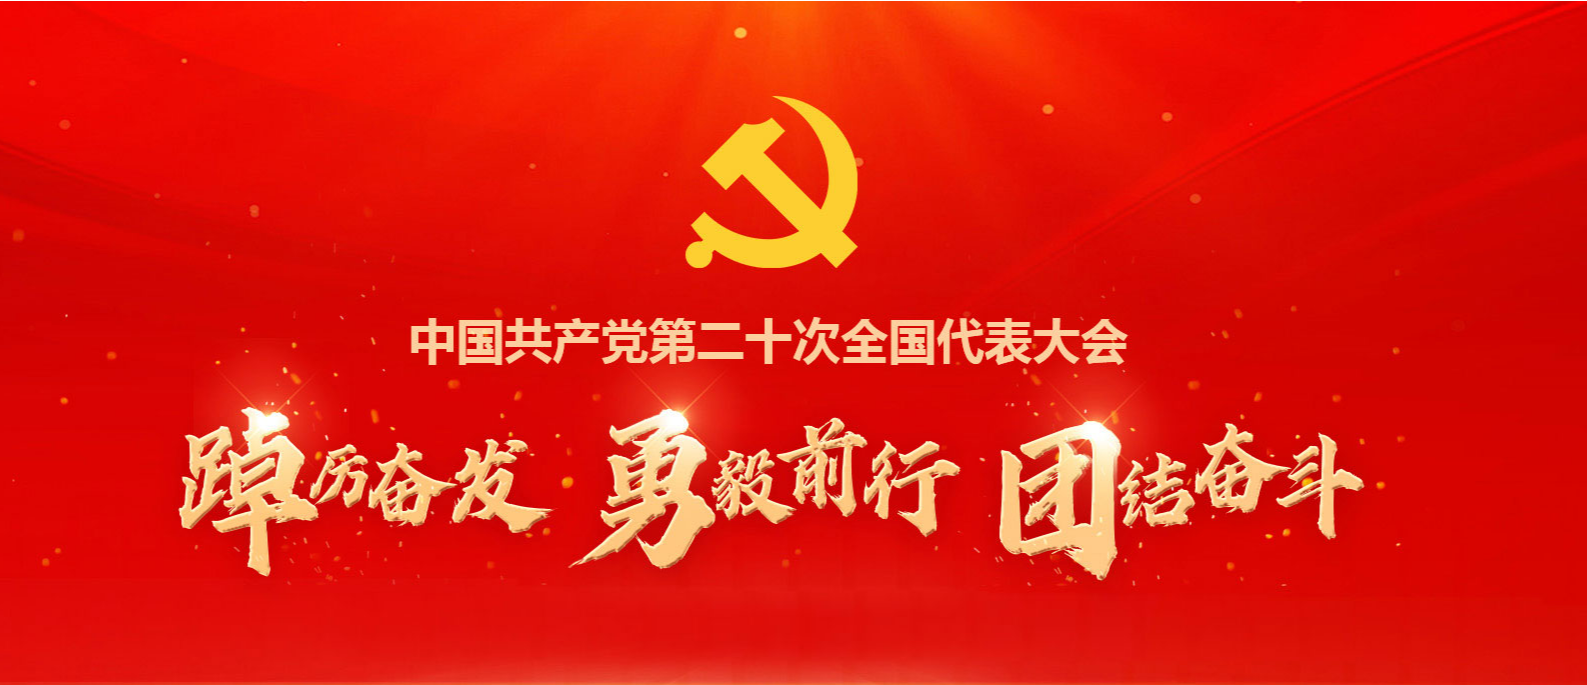 中国共产党第二十次全国代表大会专栏